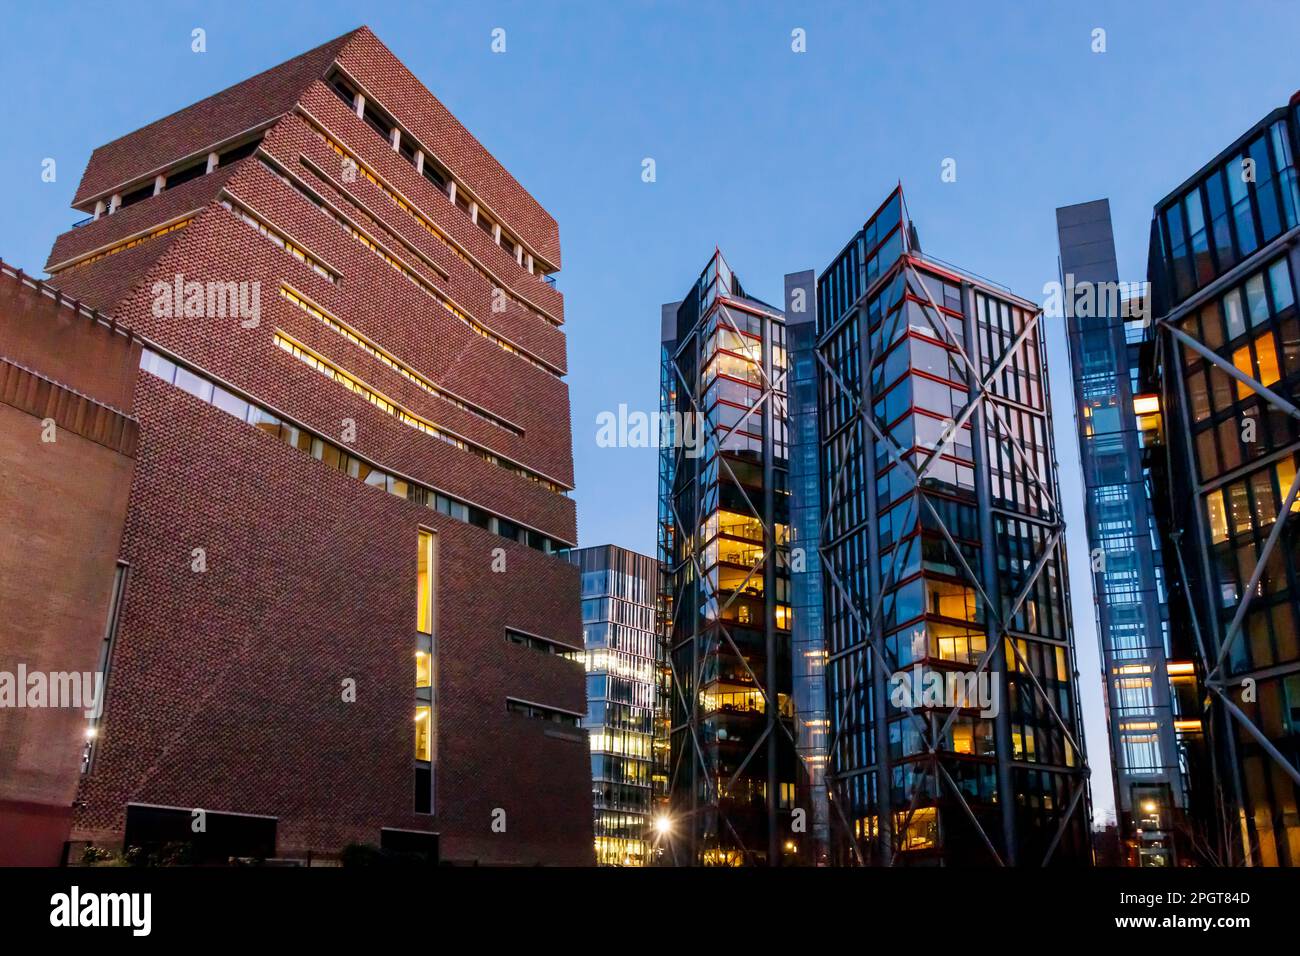 Blavatnik-Gebäude in Tate Modern, London, Großbritannien, auf der rechten Seite der Luxuswohnungen, die ein Gerichtsverfahren gegen die Galerie wegen Verletzung der Privatsphäre einleiteten Stockfoto